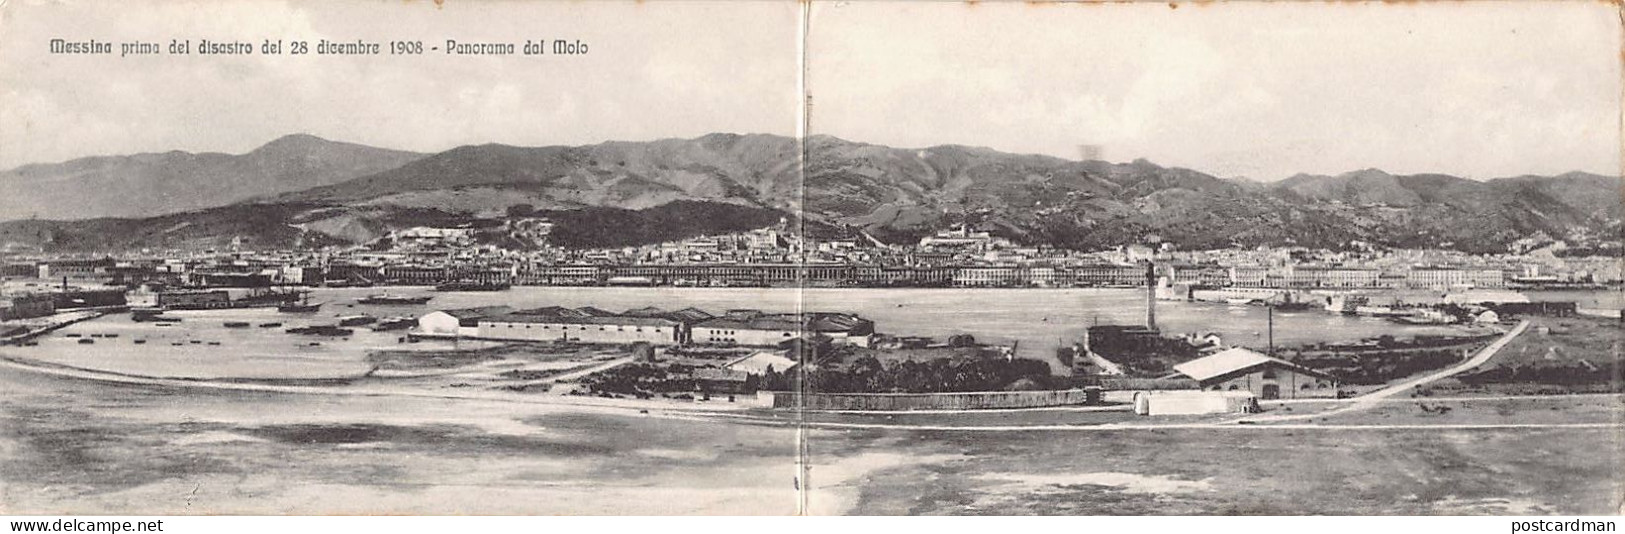 Messina Primo Del Disastro Del 28 Diciembre 1908 - Panorama Dal Molo - Messina